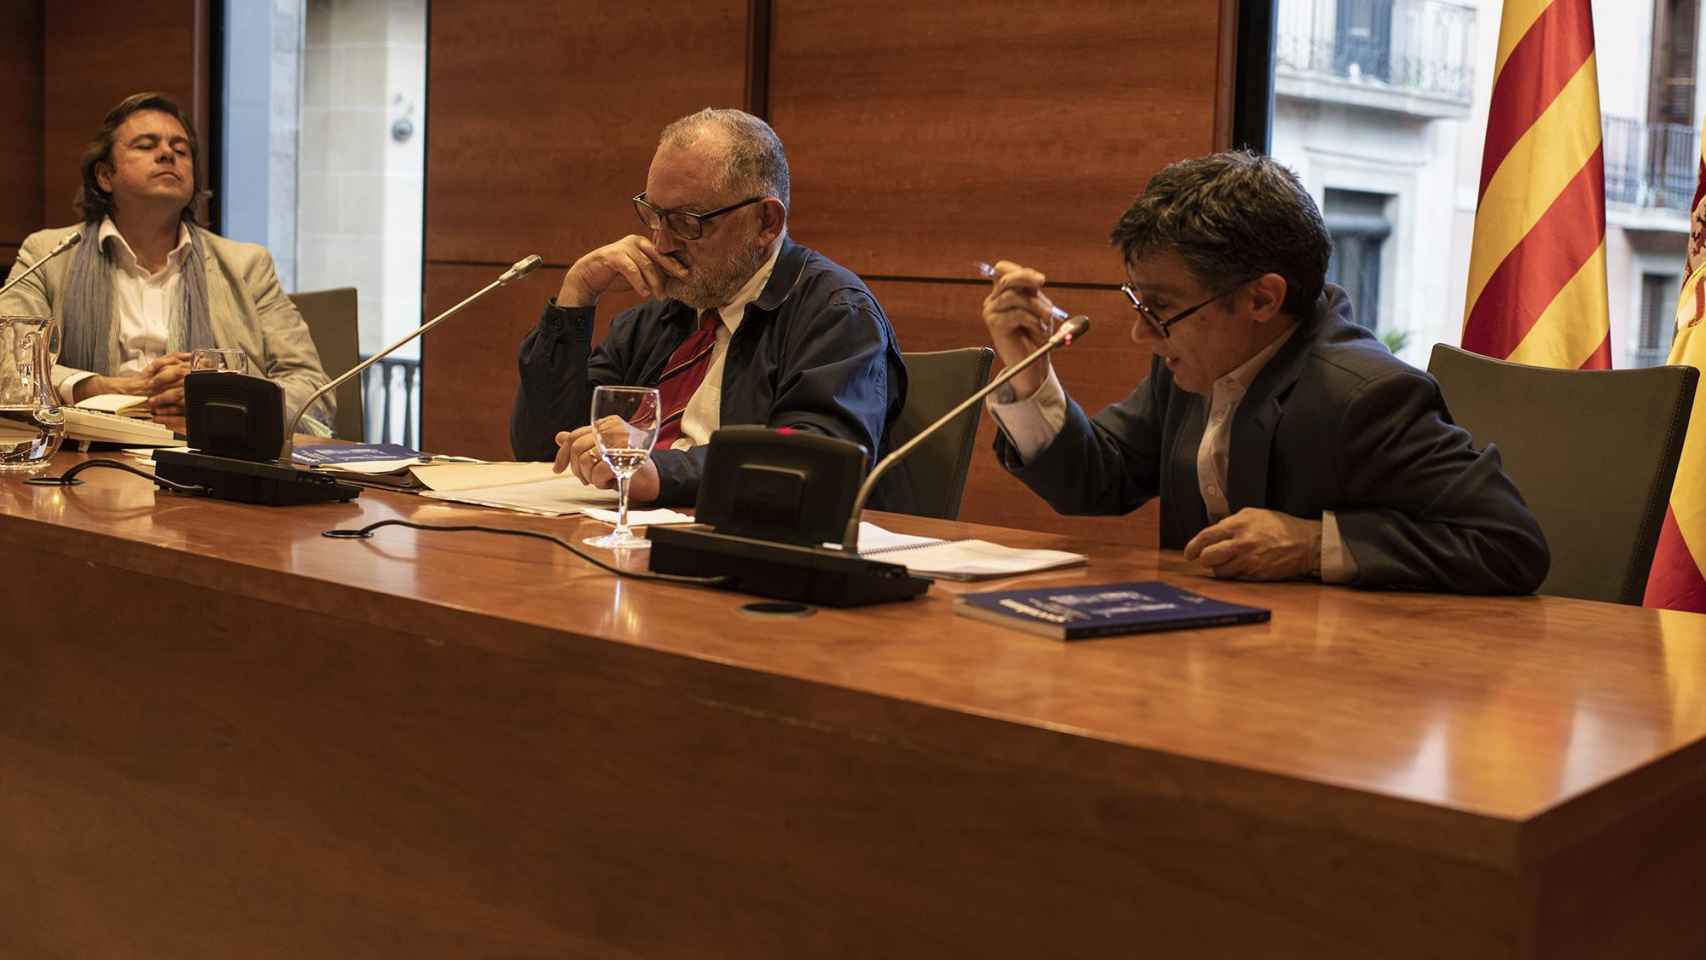 Manel Manchón y Rafael Jorba en Diálogos sobre una crisis, organizado por el CLAC, junto a Andreu Jaume  / LENA PRIETO